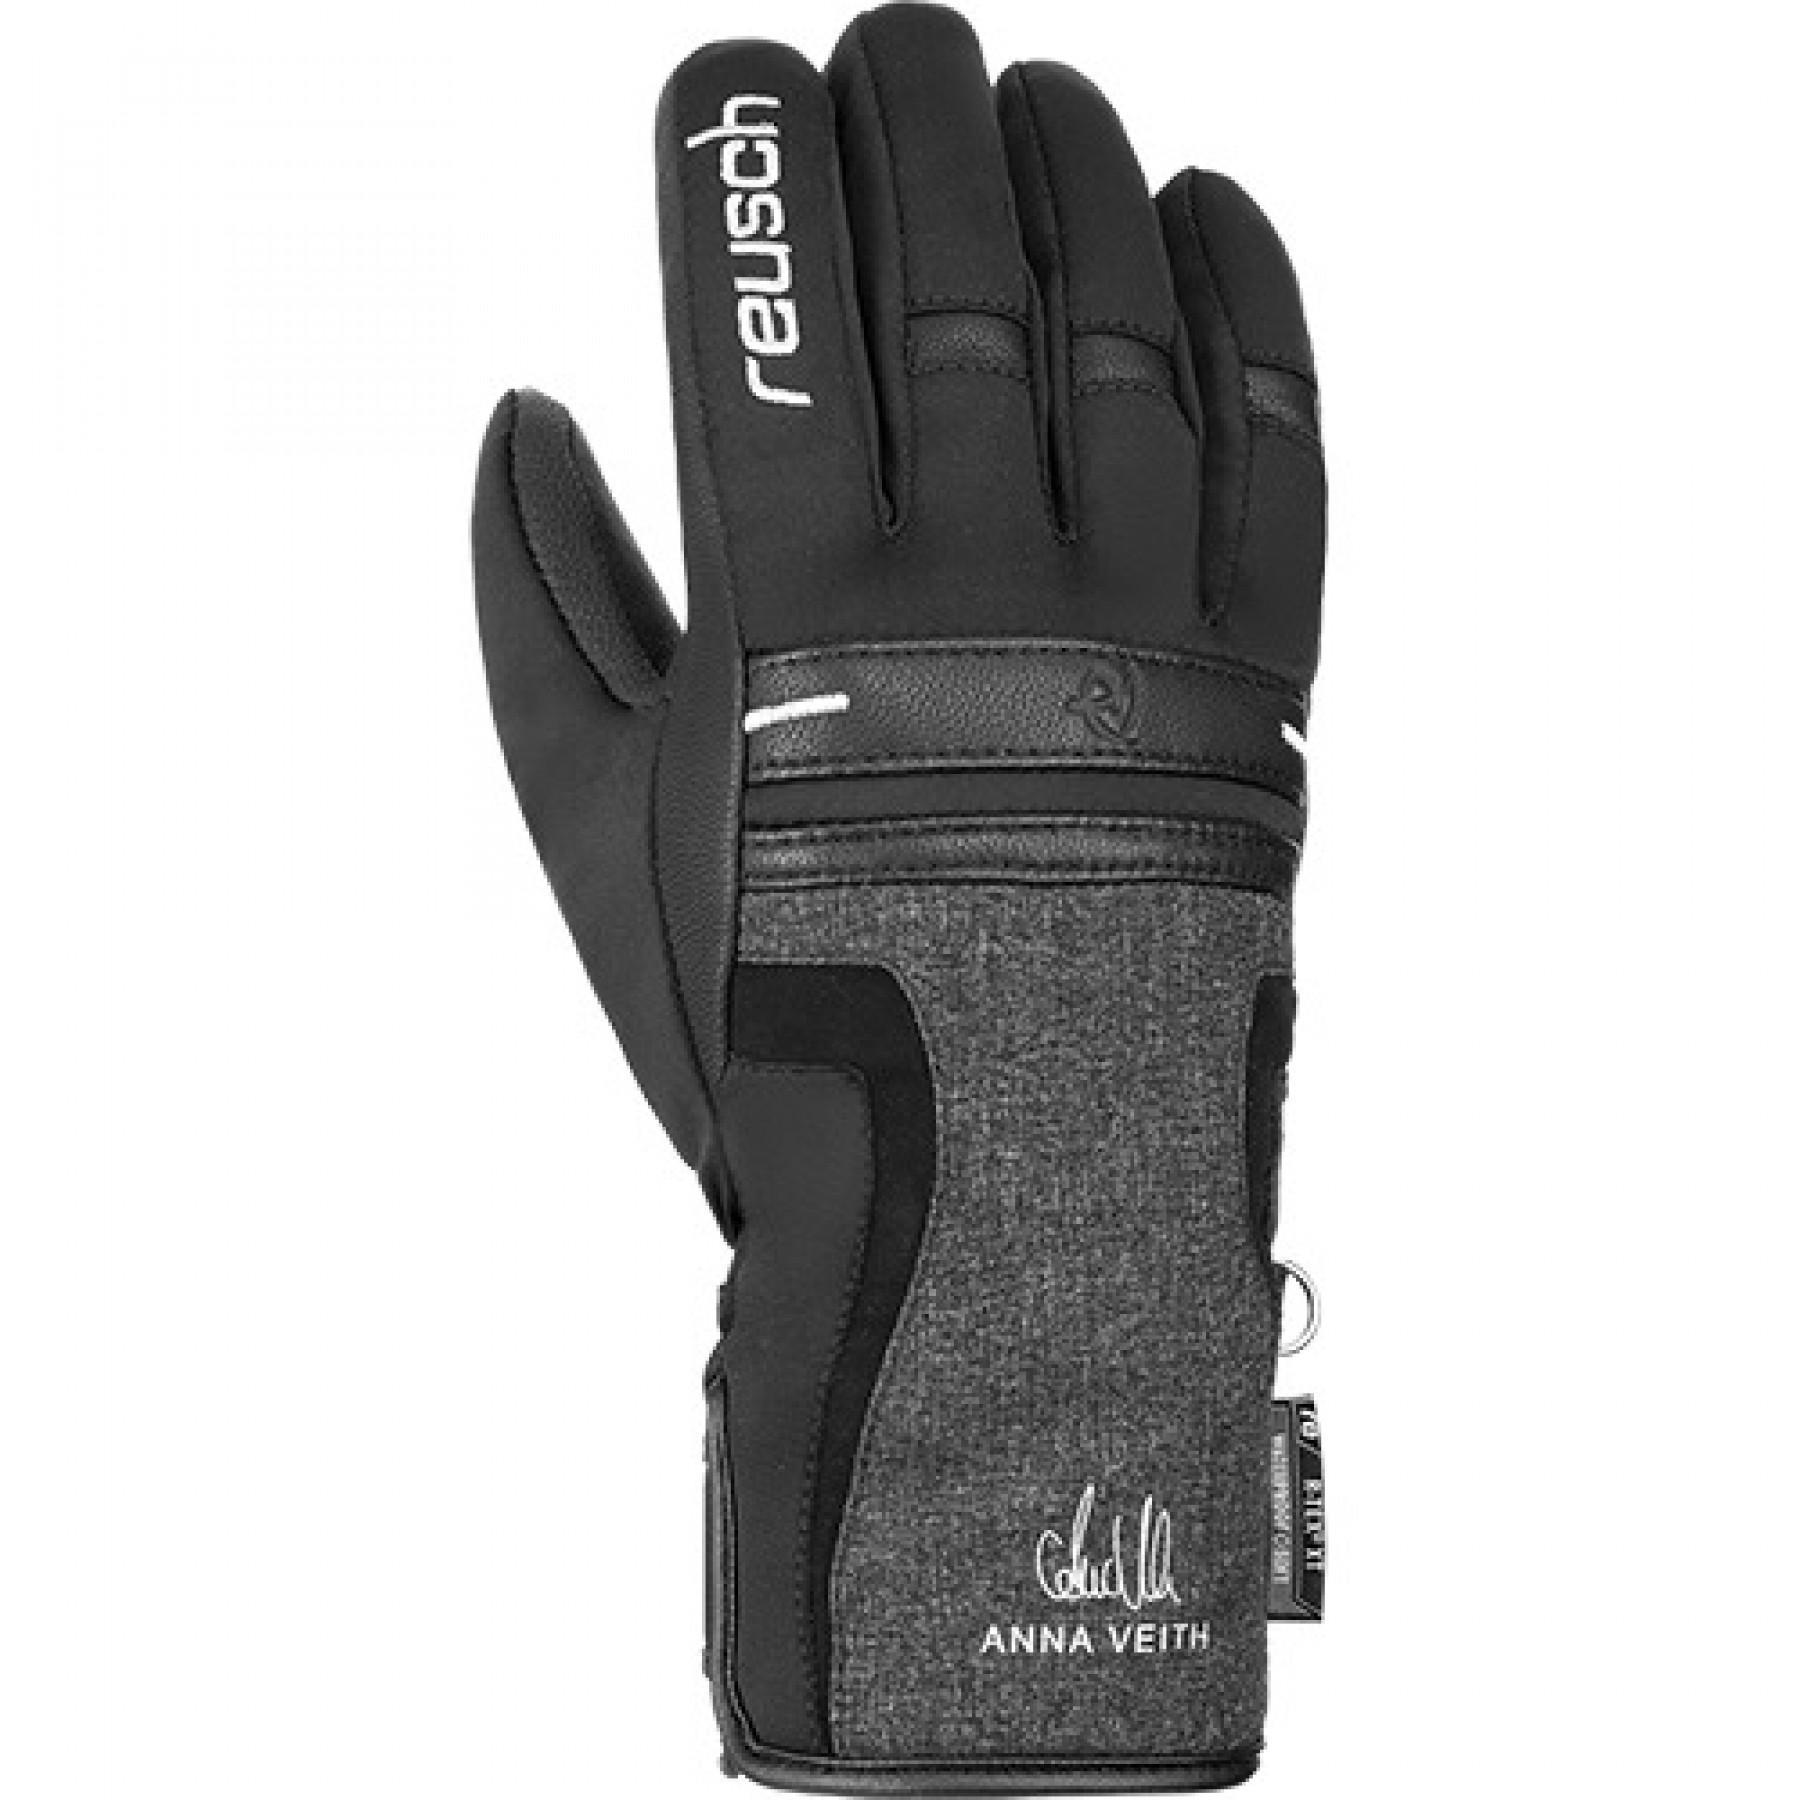 Women's gloves Reusch Anna Veith R-tex® XT